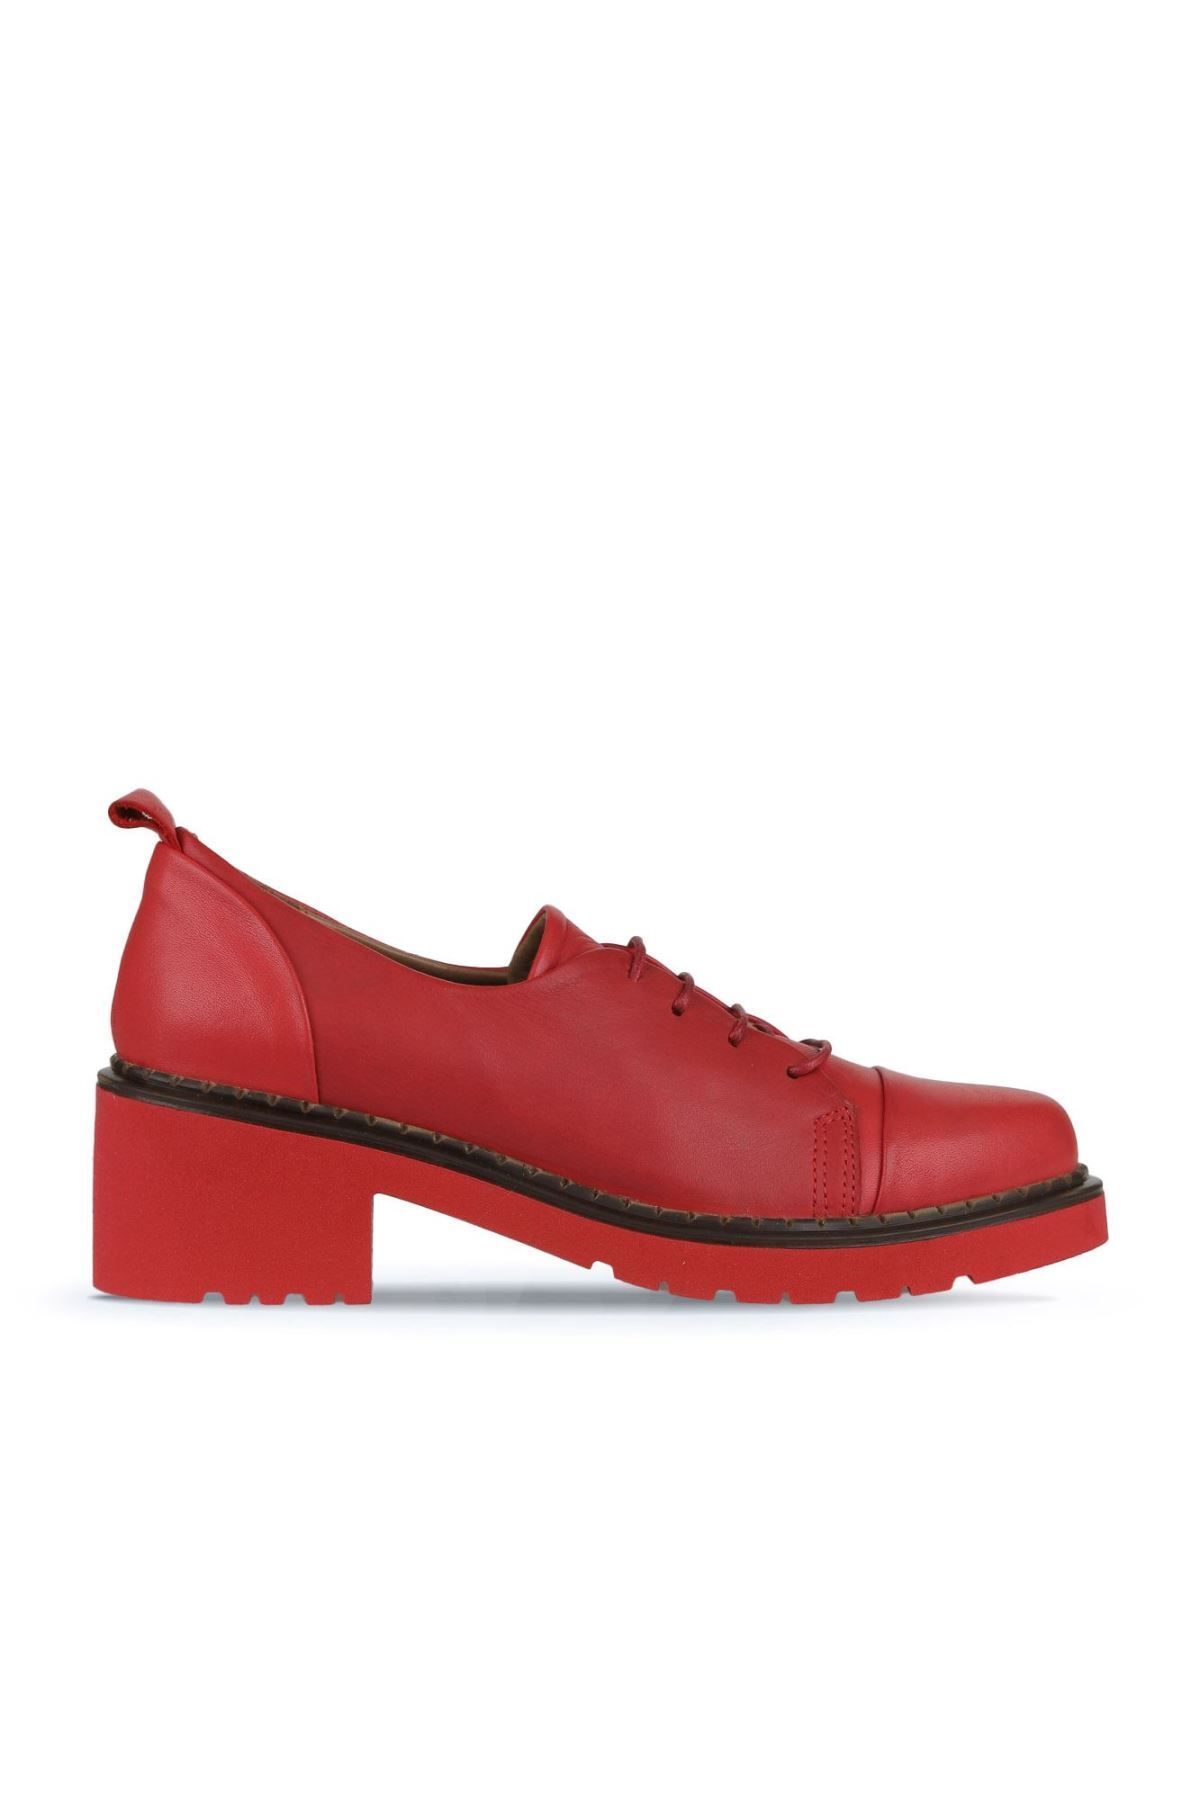 Bueno Shoes Kırmızı Deri Kadın Topuklu Ayakkabı